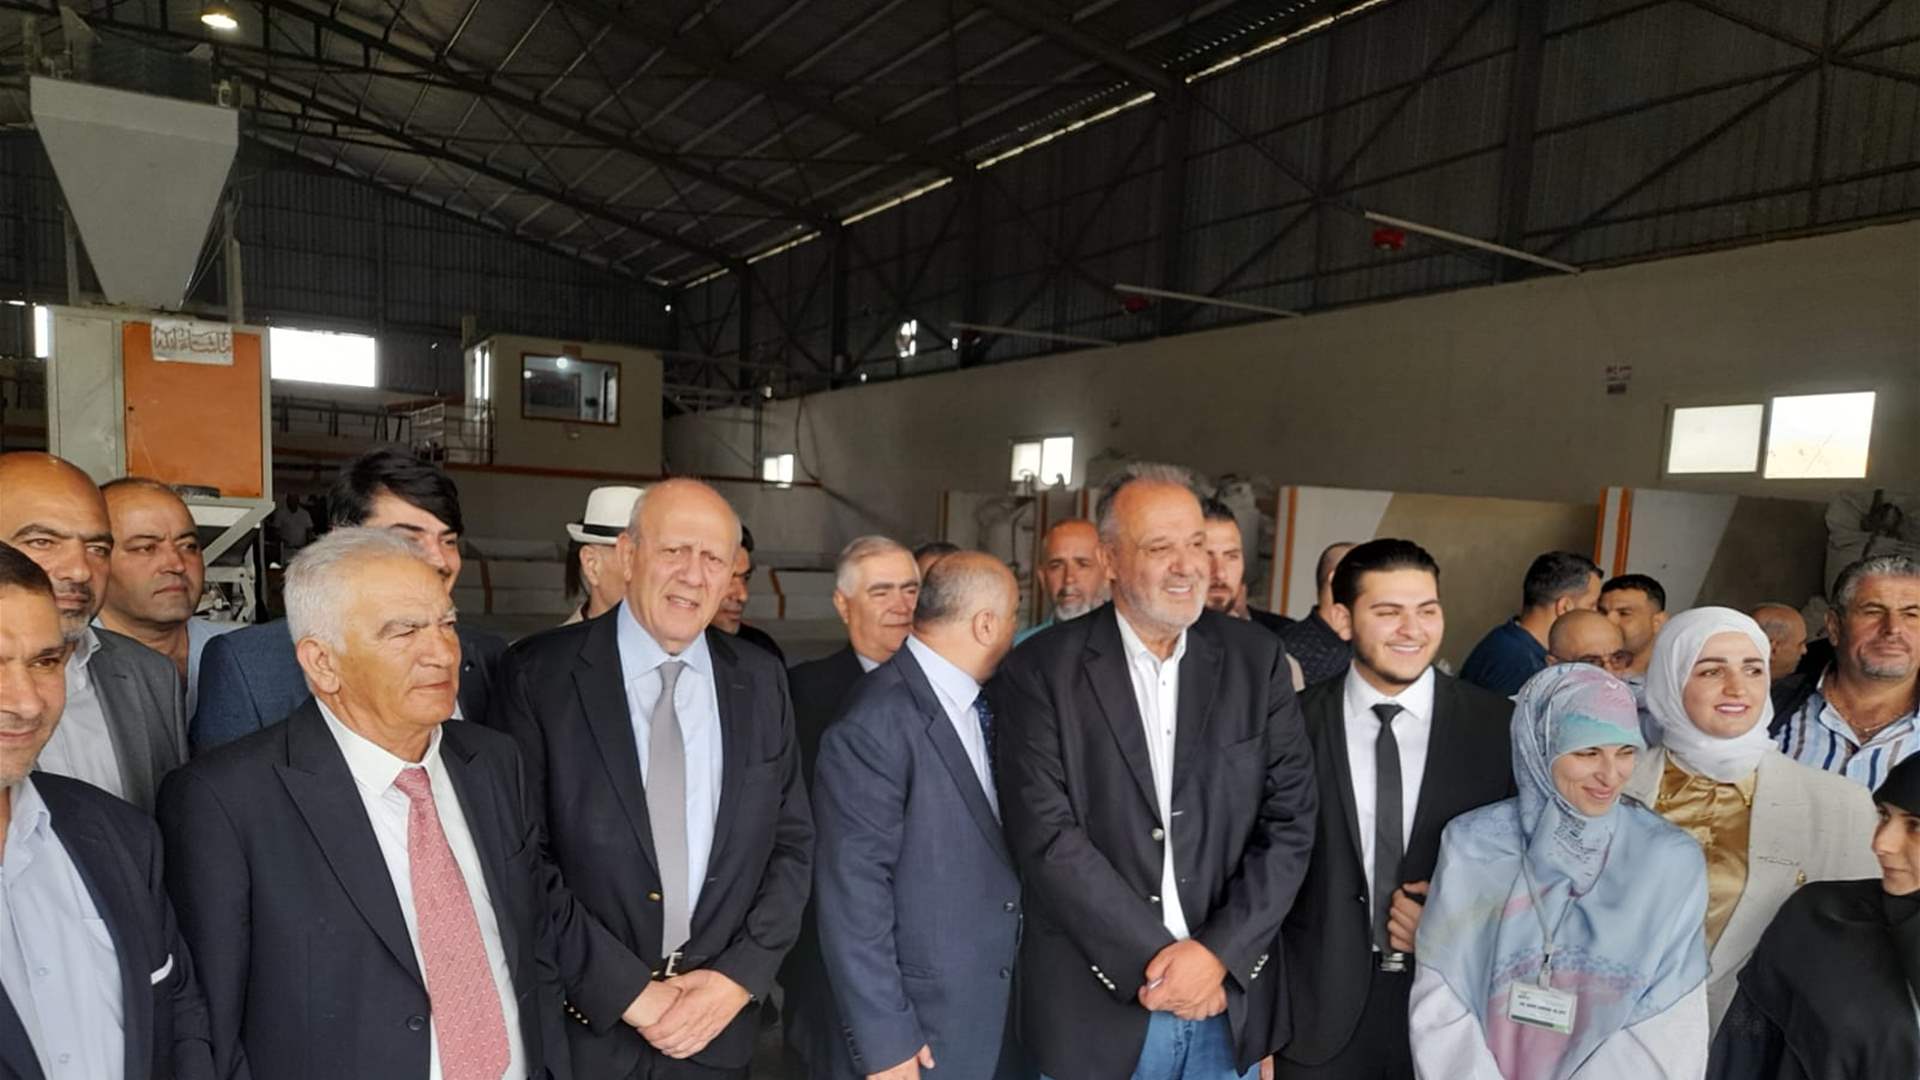 بوشكيان: المصانع البقاعية تمد لبنان ودول المنطقة بالإنتاج العالي الجودة